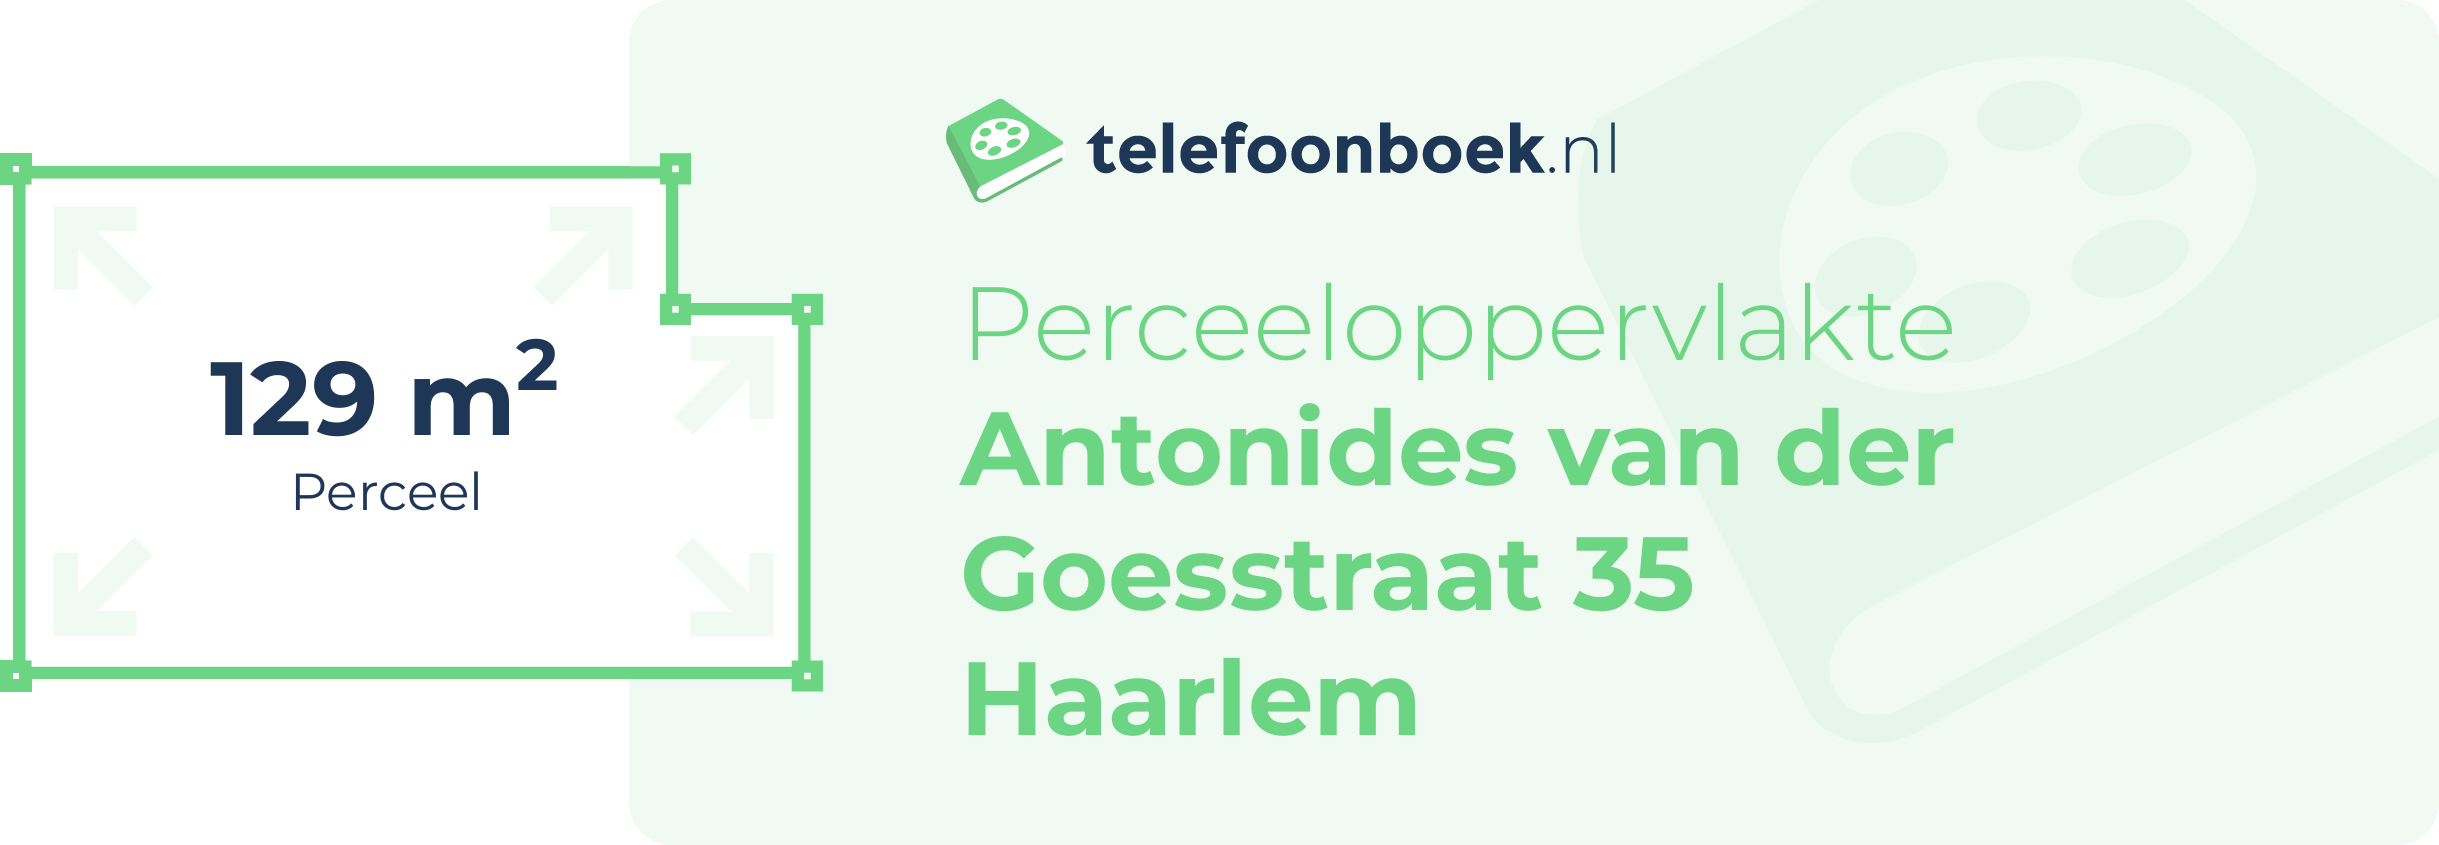 Perceeloppervlakte Antonides Van Der Goesstraat 35 Haarlem